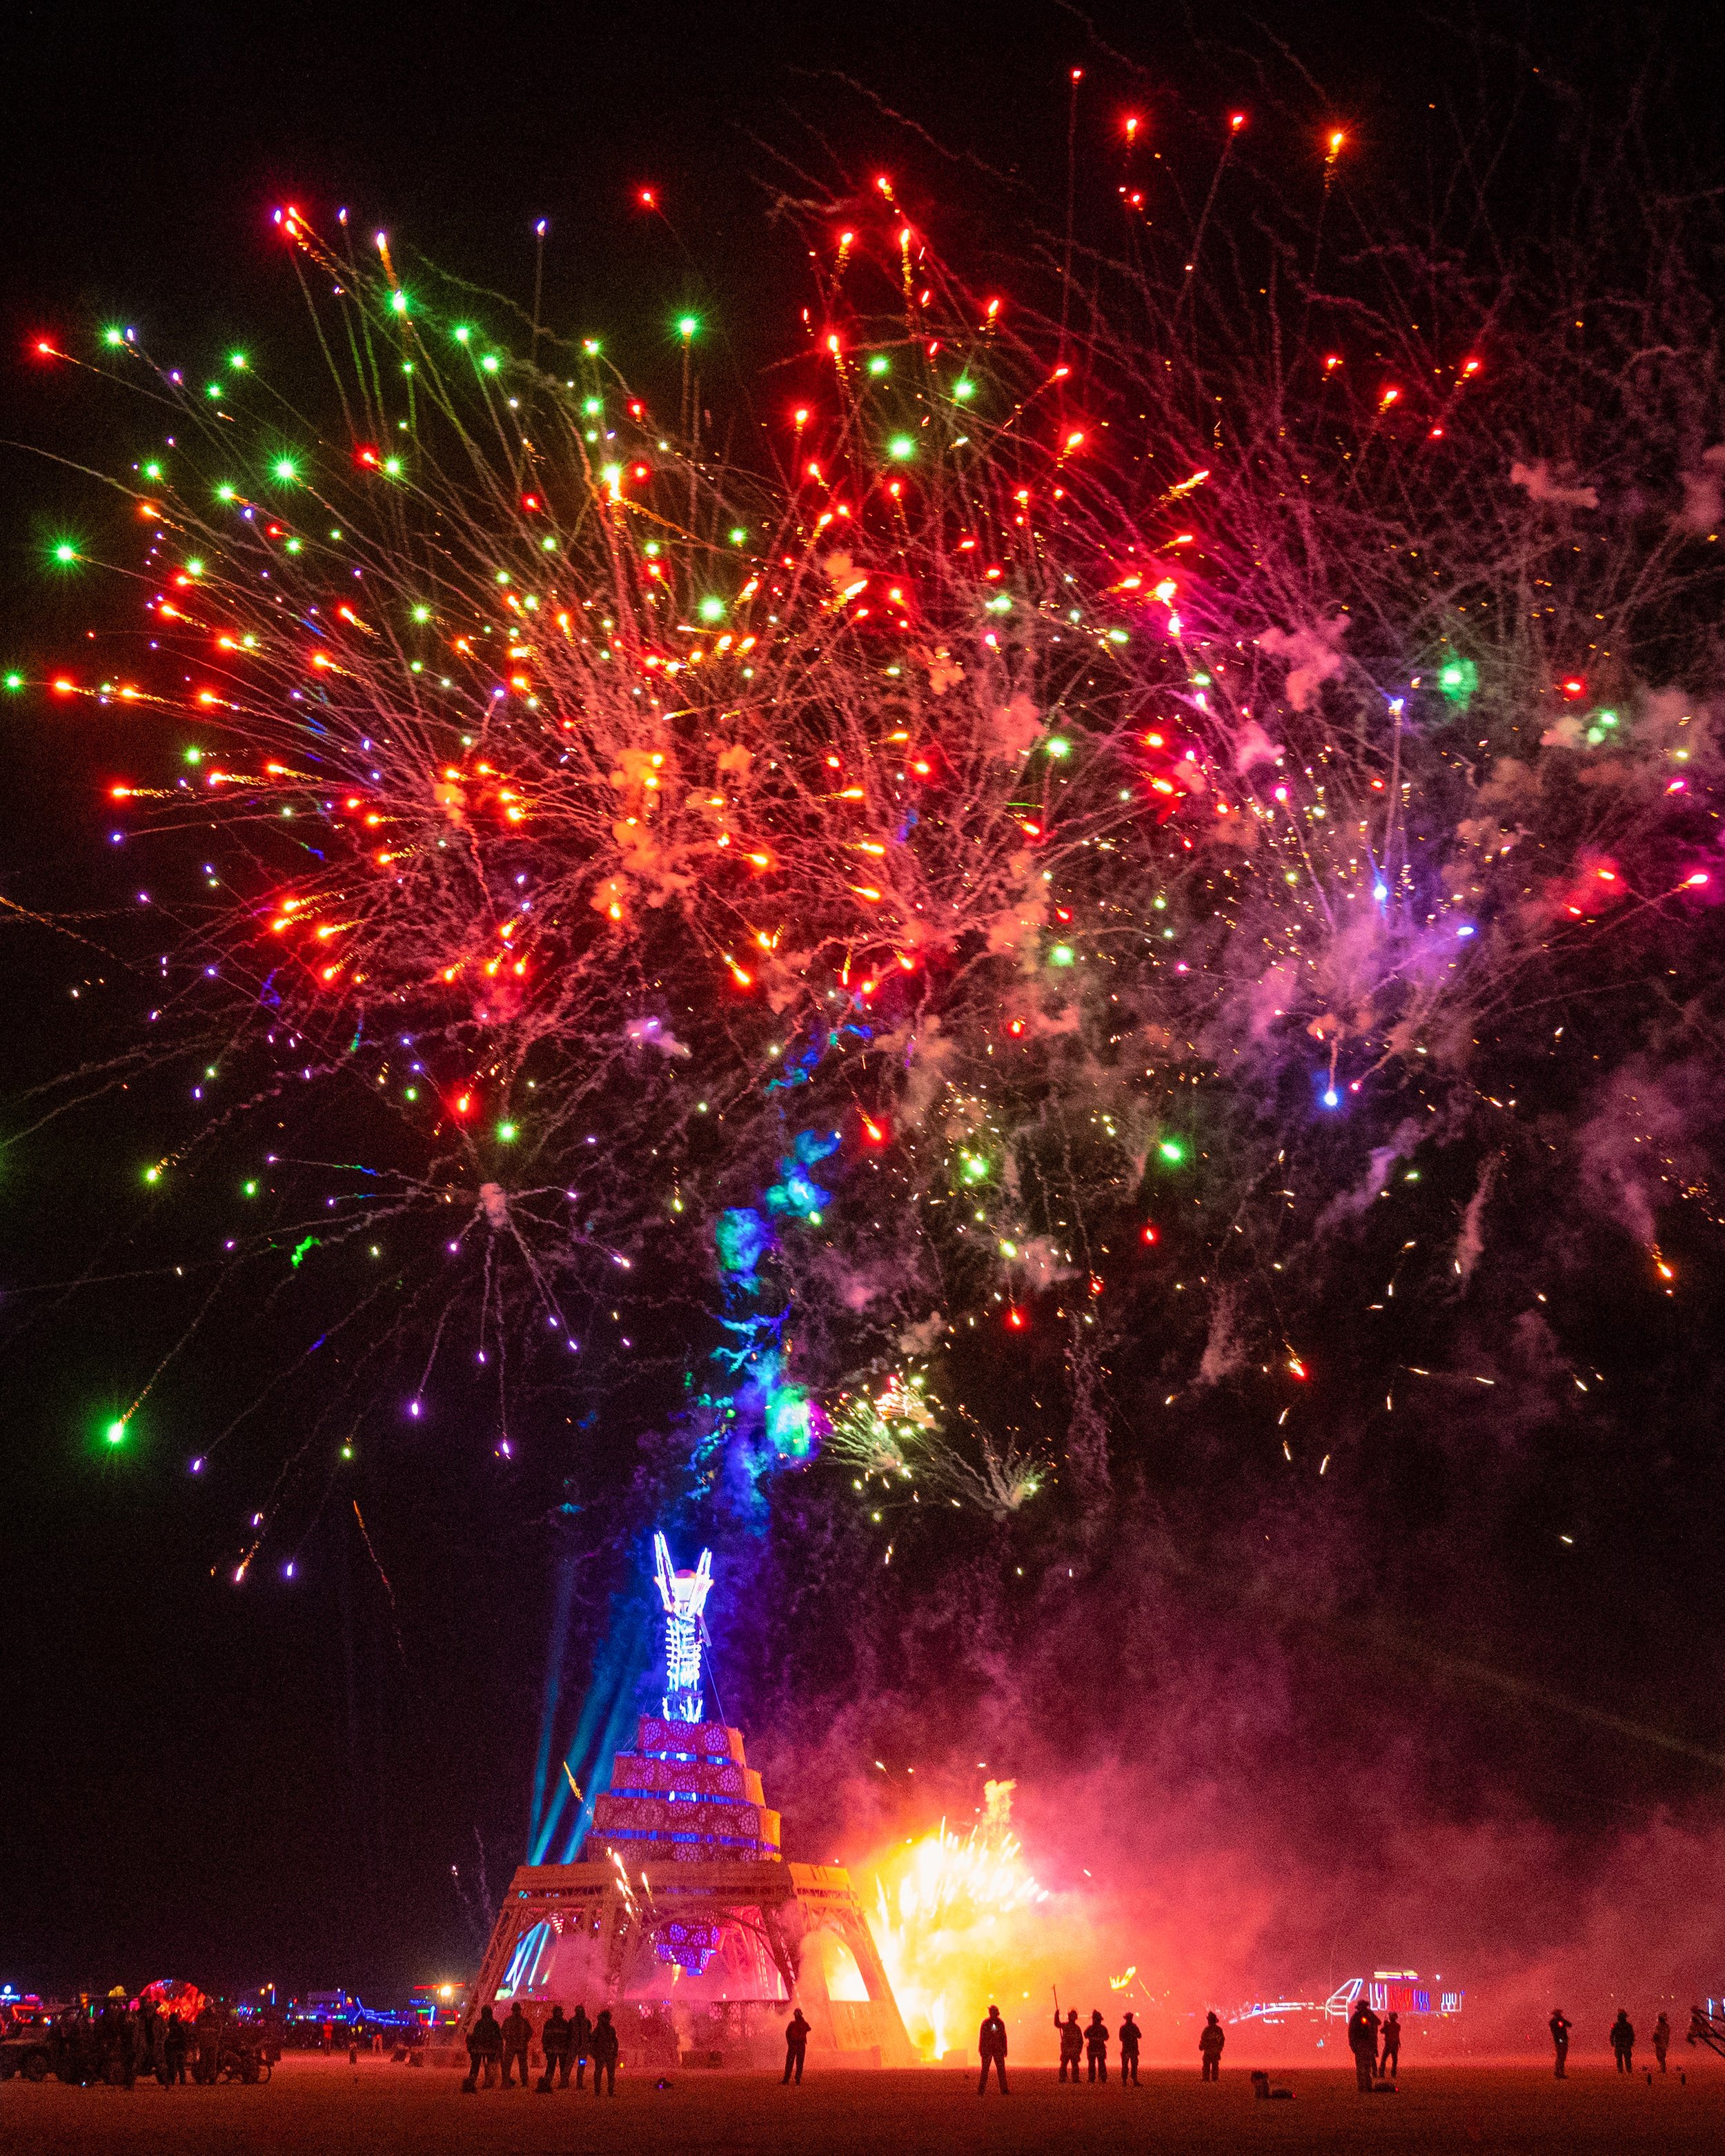 Burning Man 2019 - Burn night fireworks